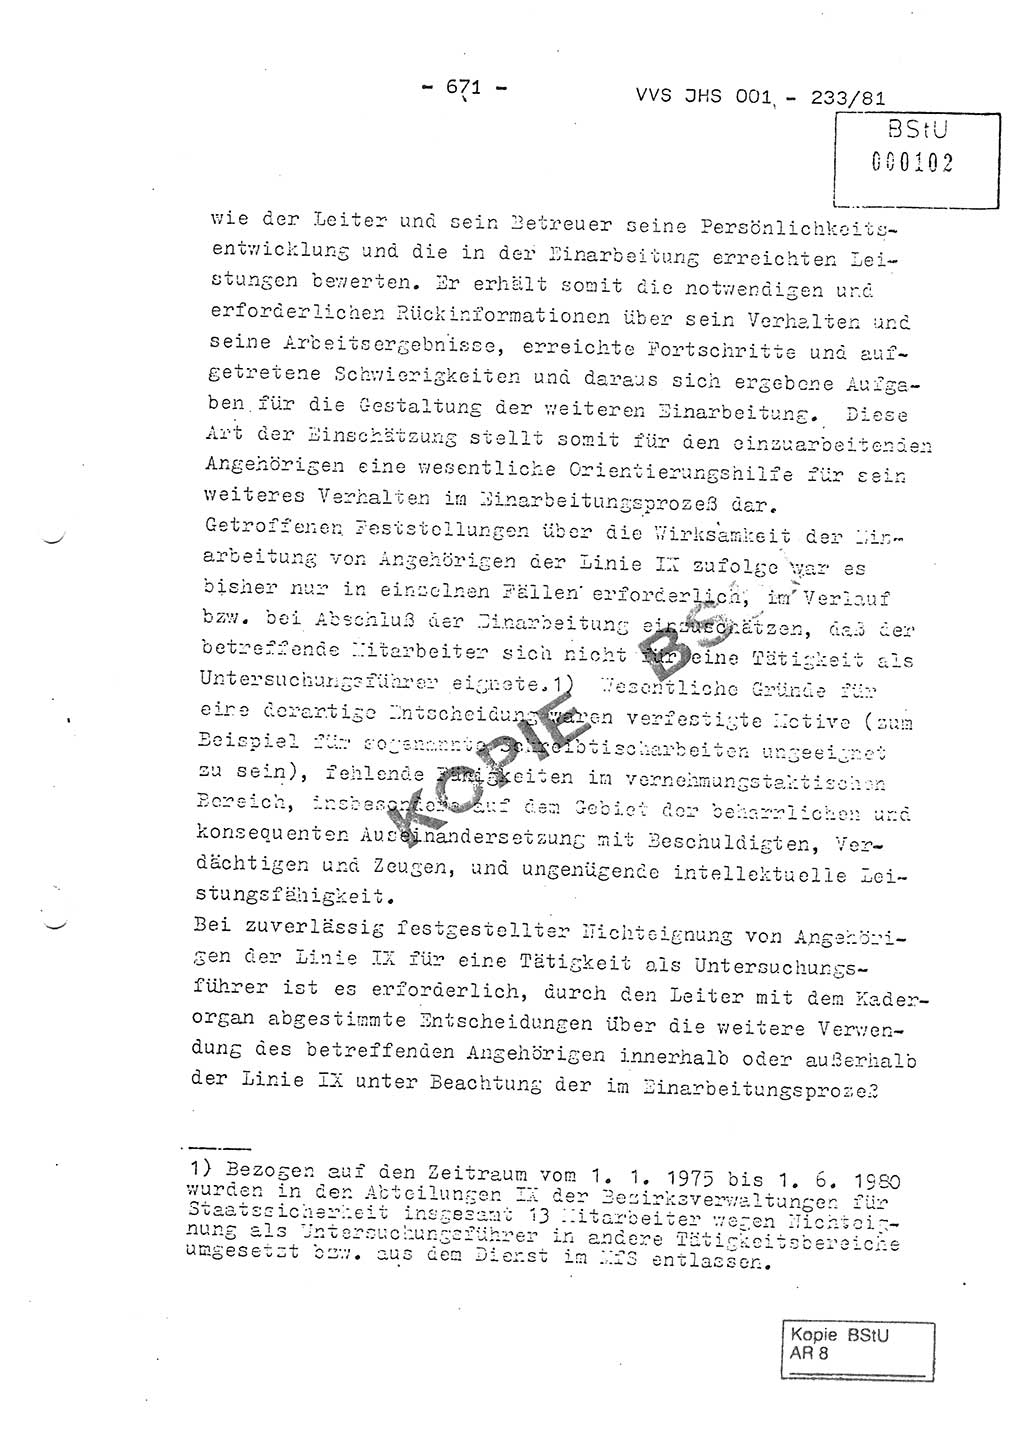 Dissertation Oberstleutnant Horst Zank (JHS), Oberstleutnant Dr. Karl-Heinz Knoblauch (JHS), Oberstleutnant Gustav-Adolf Kowalewski (HA Ⅸ), Oberstleutnant Wolfgang Plötner (HA Ⅸ), Ministerium für Staatssicherheit (MfS) [Deutsche Demokratische Republik (DDR)], Juristische Hochschule (JHS), Vertrauliche Verschlußsache (VVS) o001-233/81, Potsdam 1981, Blatt 671 (Diss. MfS DDR JHS VVS o001-233/81 1981, Bl. 671)